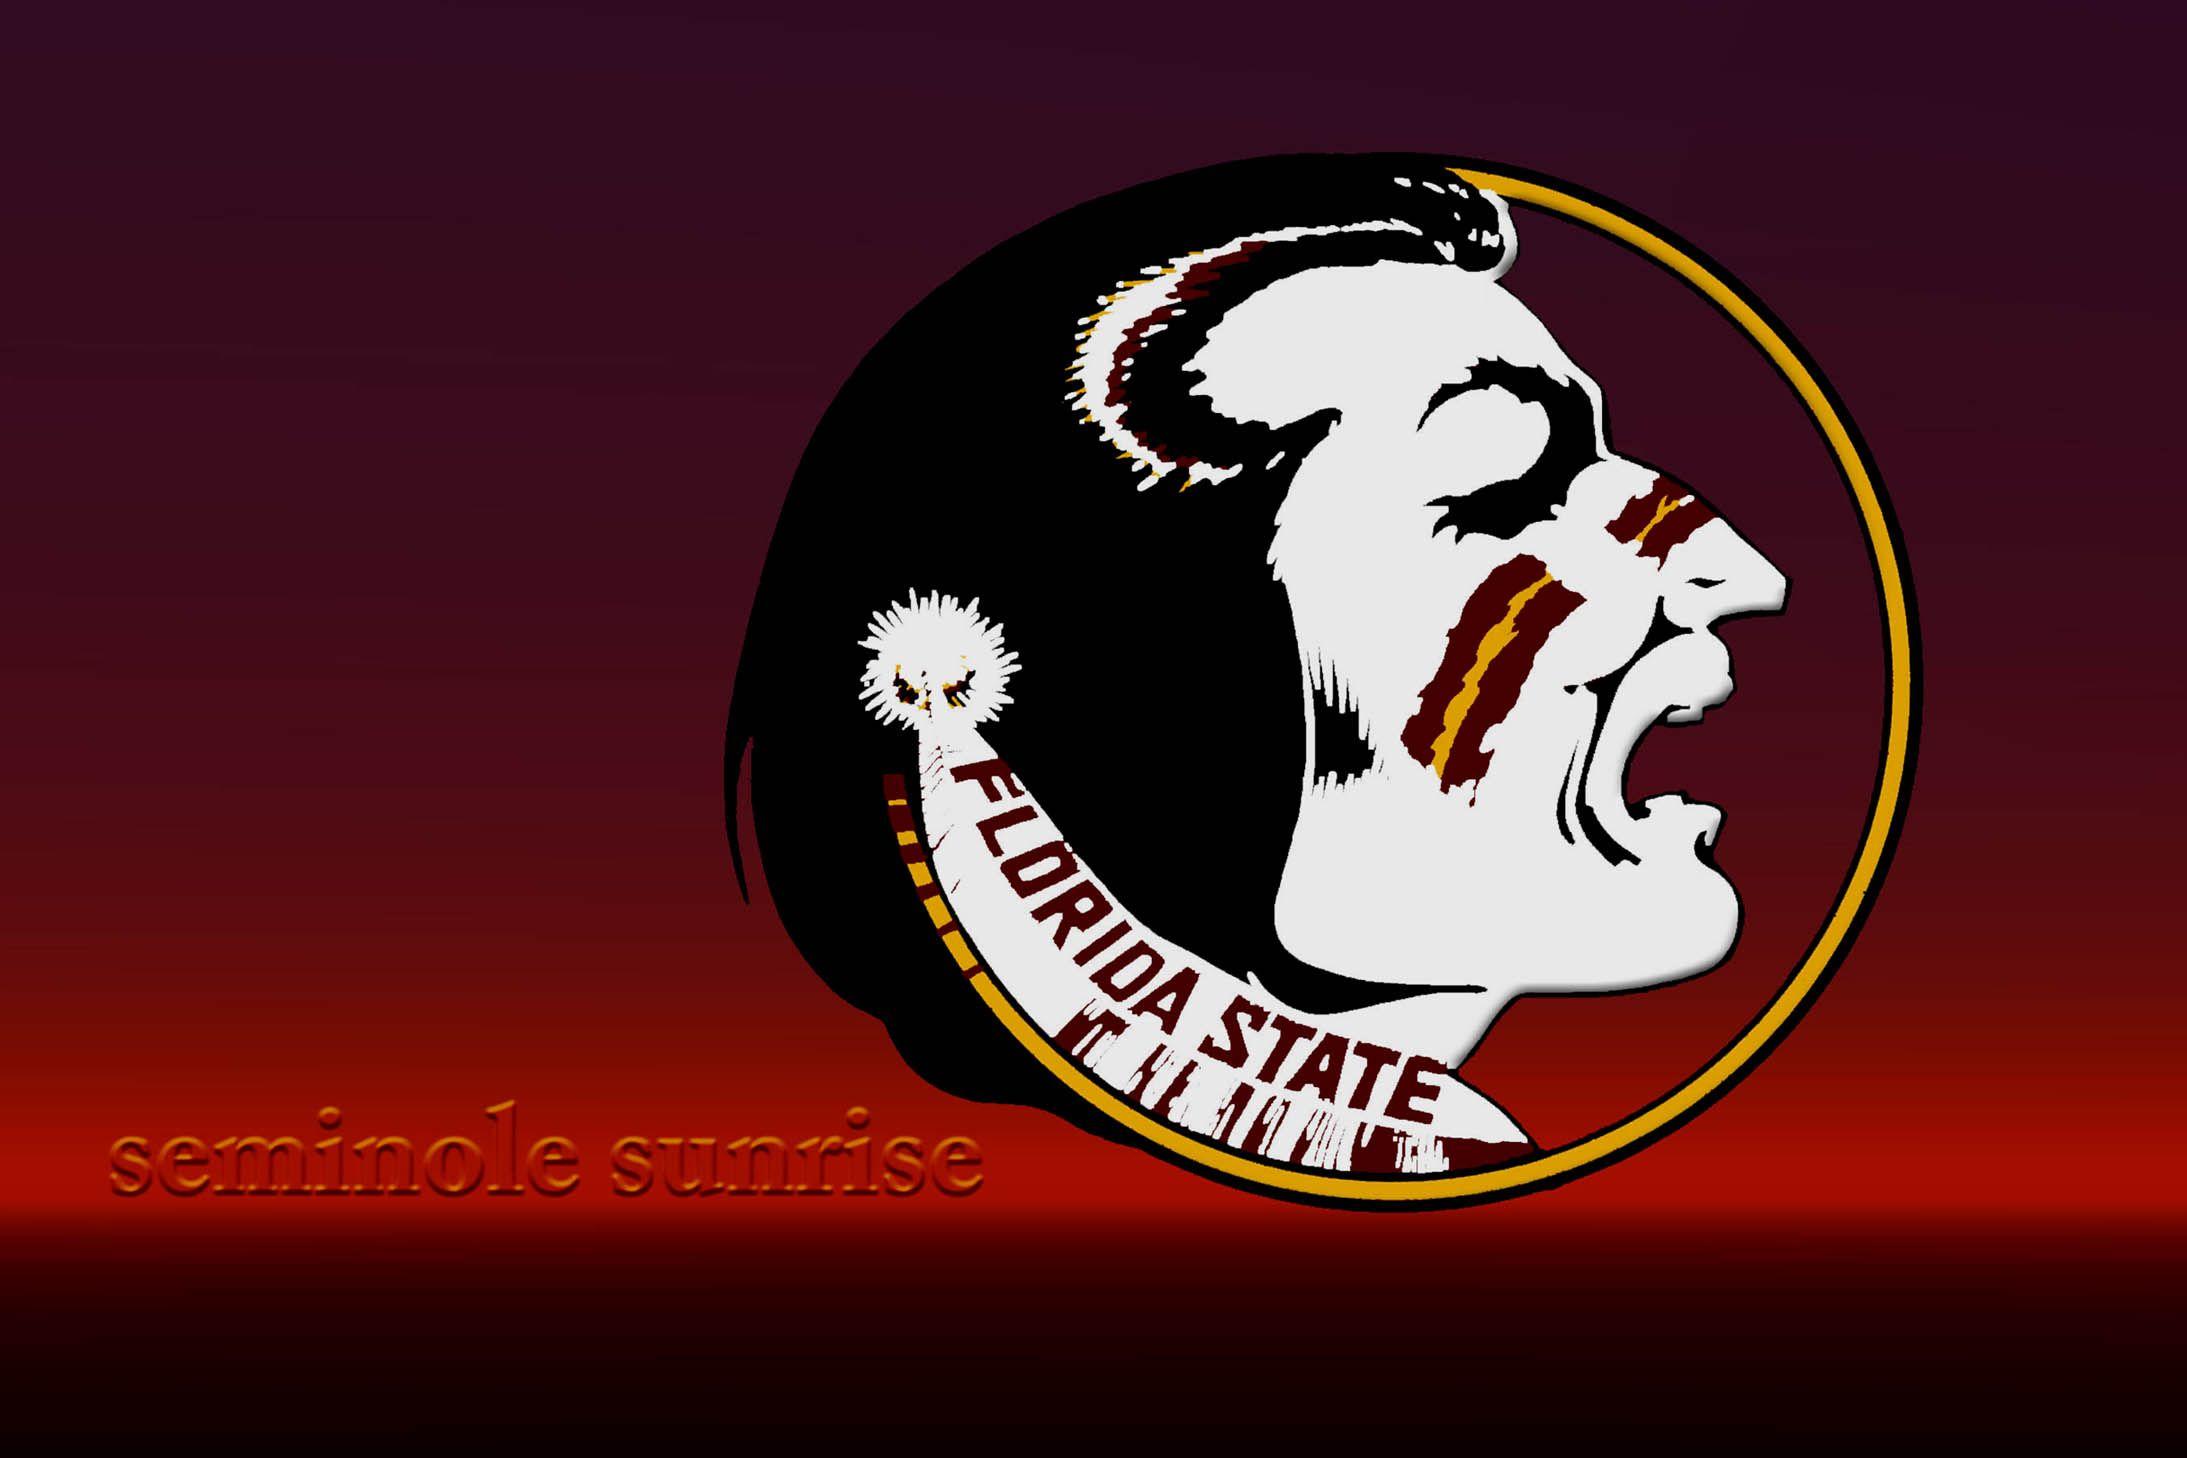 fsu seminoles logo wallpaper